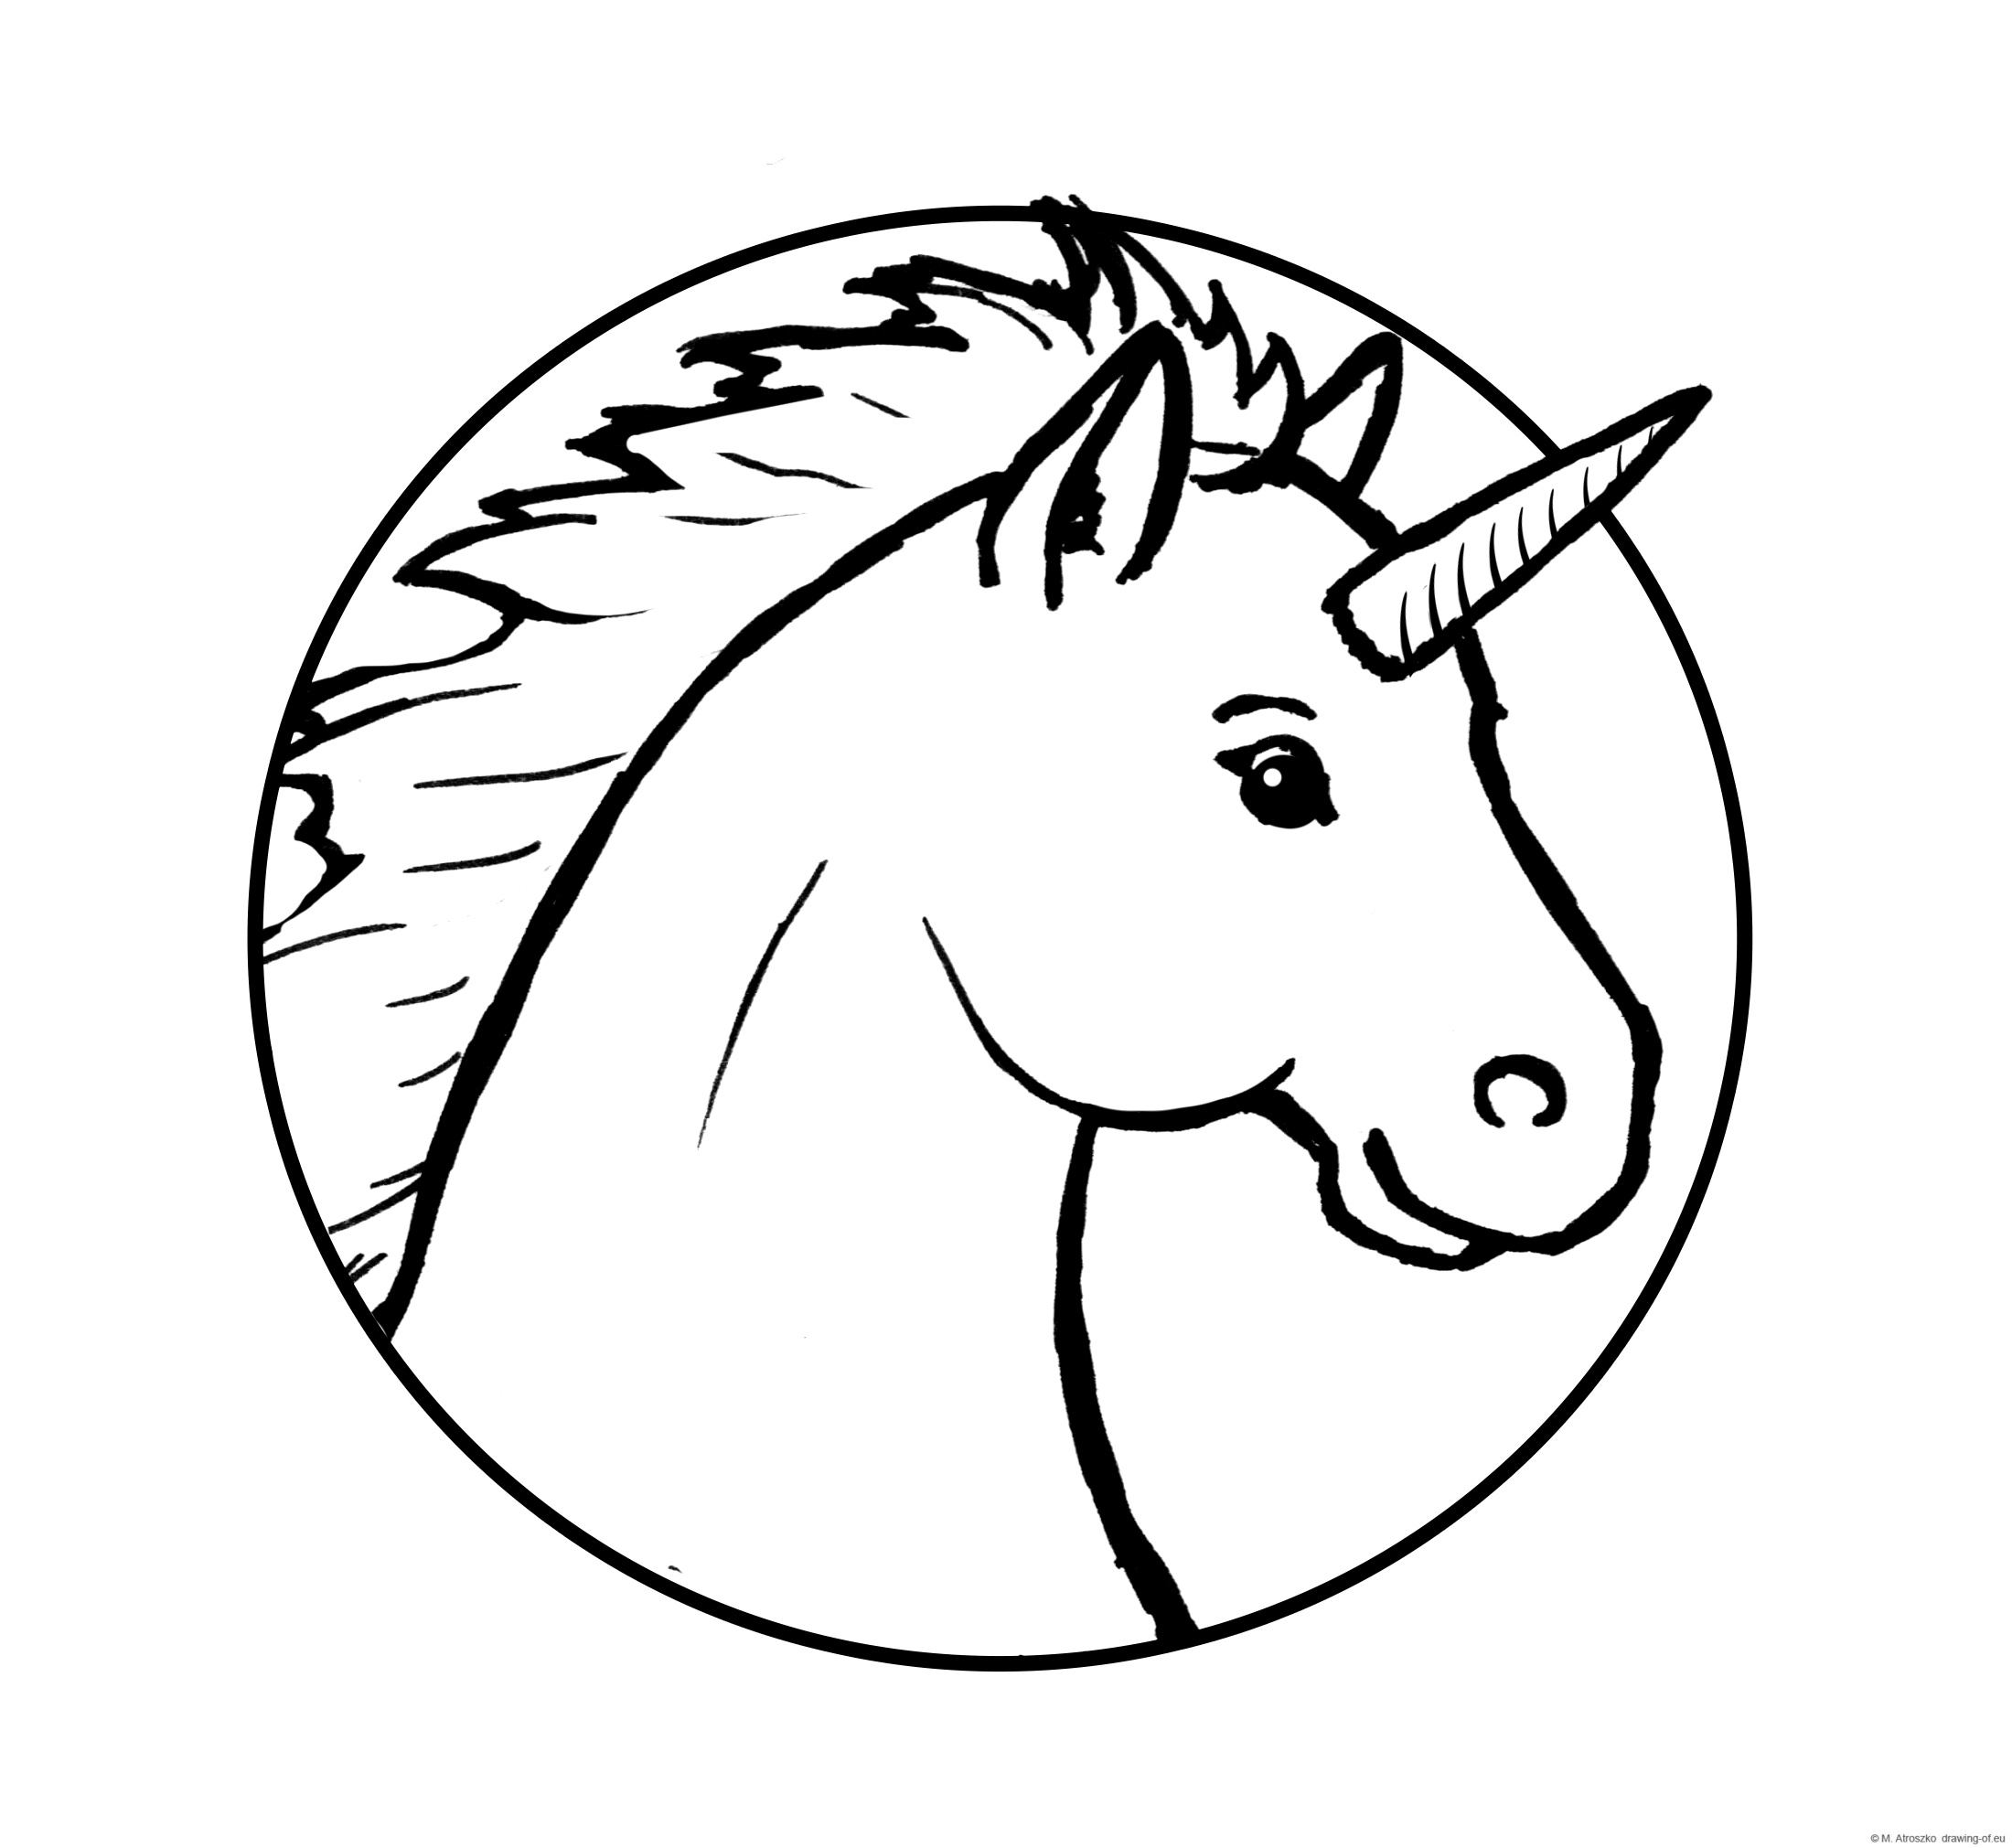 Male unicorn